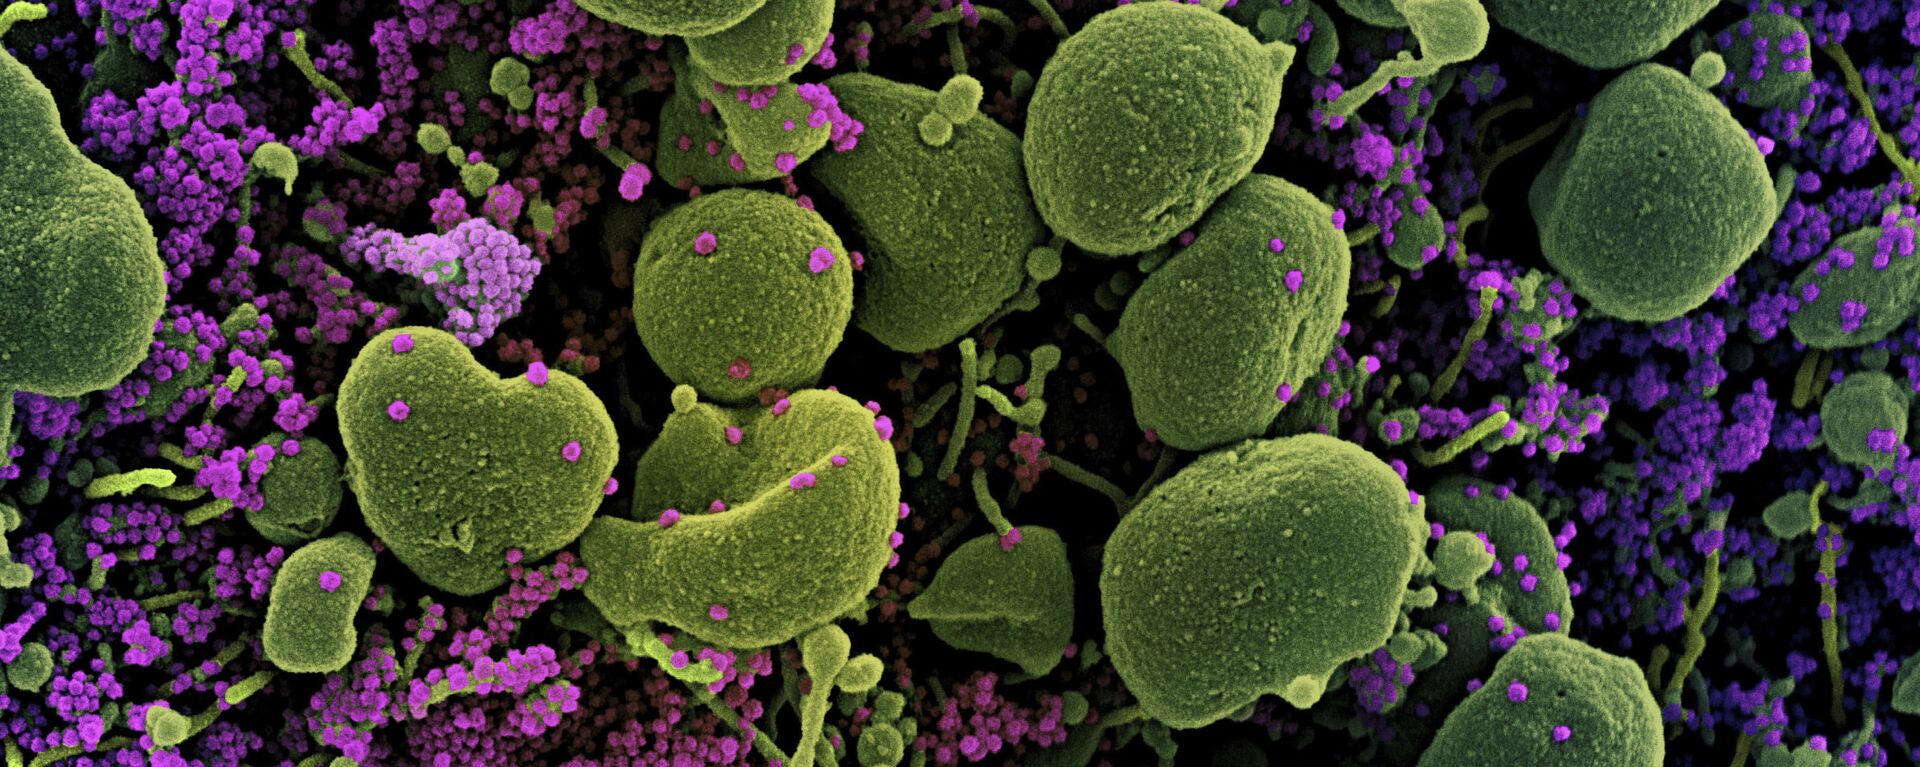 Клетка коронавируса под микроскопом  - Sputnik Грузия, 1920, 02.02.2021